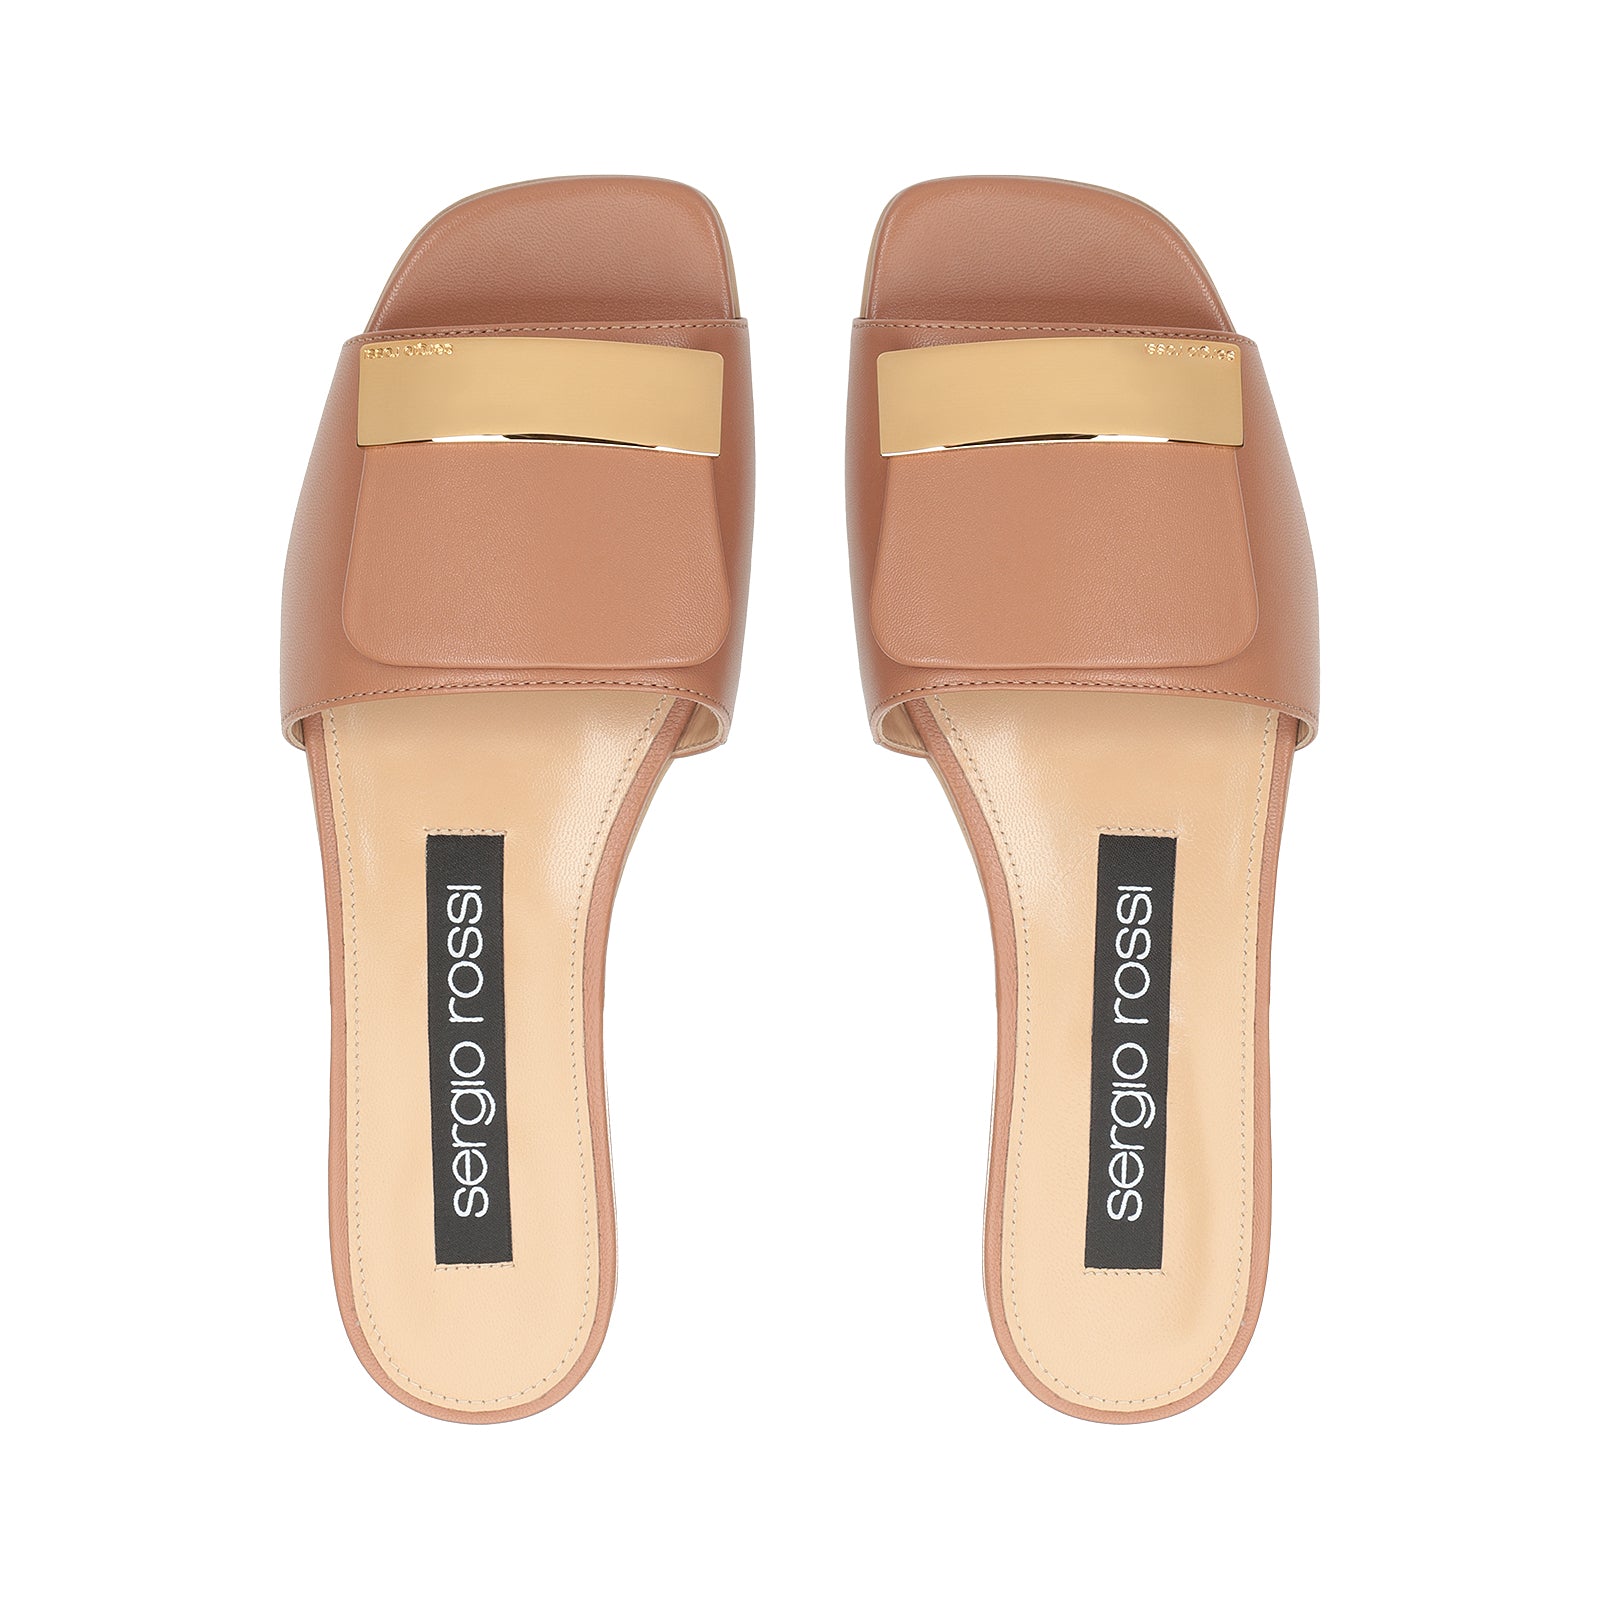 Sr1 flat sandals - Tan